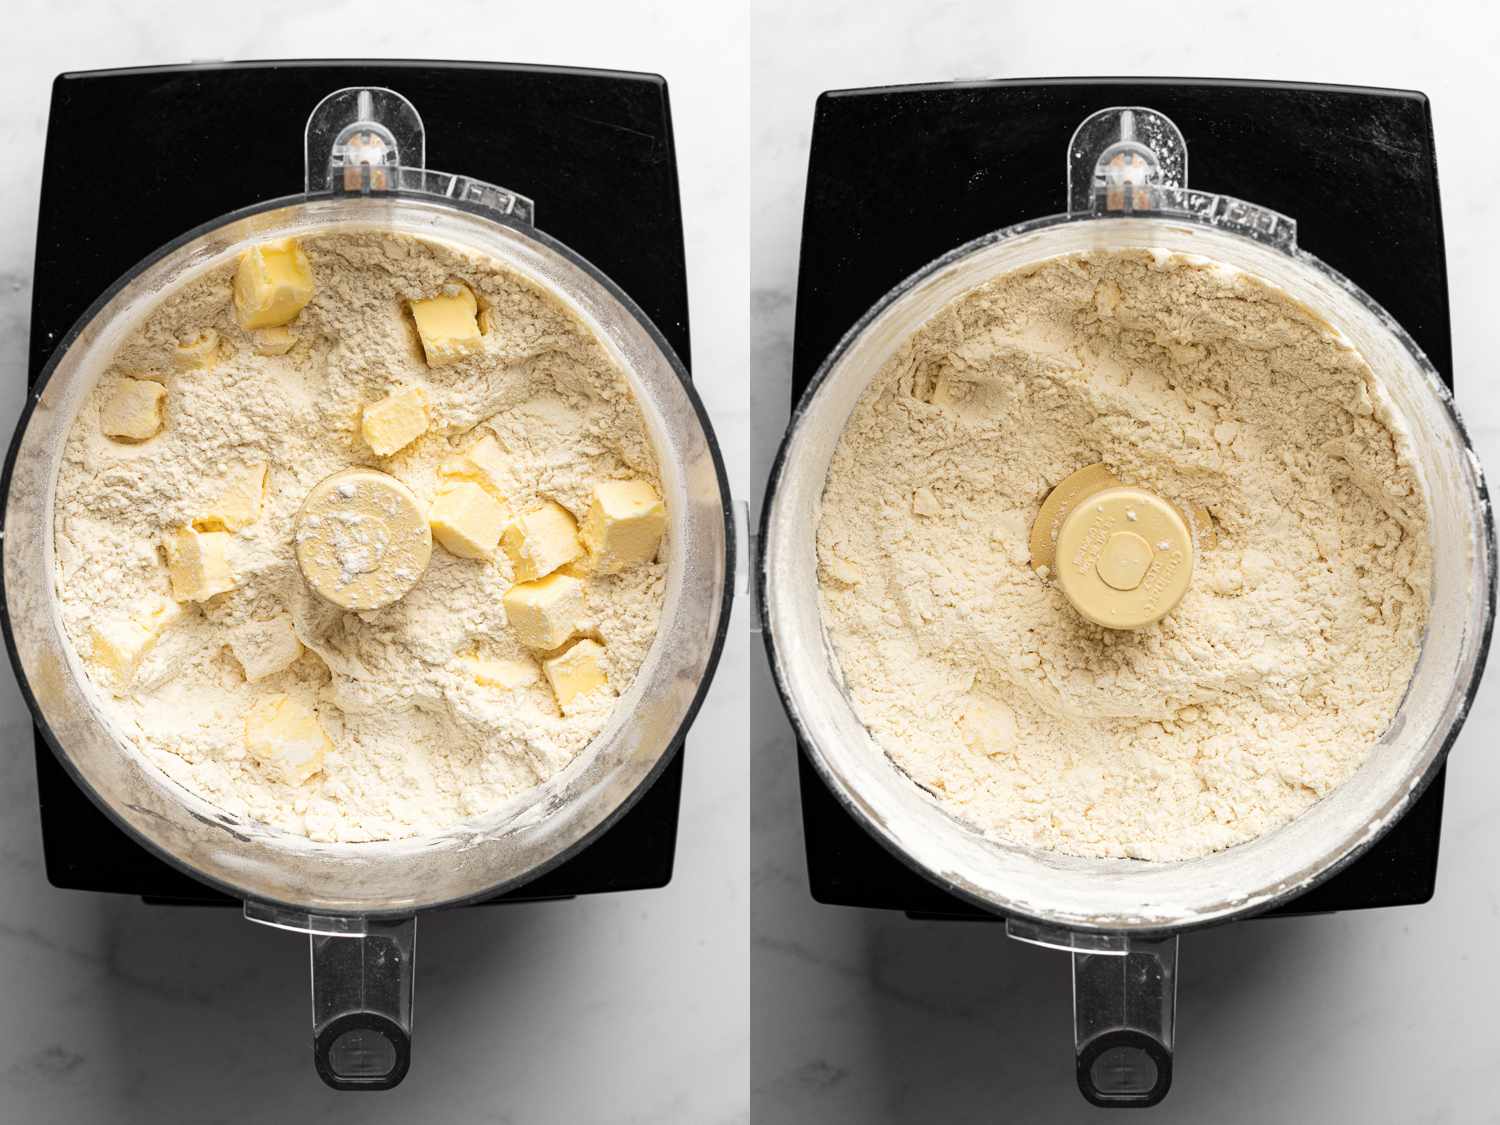 两幅图像的拼贴画。左图显示的是一个黑色食品加工机里的面粉和大块黄油。右图显示了面粉和黄油现在加工成它，仍然在食品加工机。